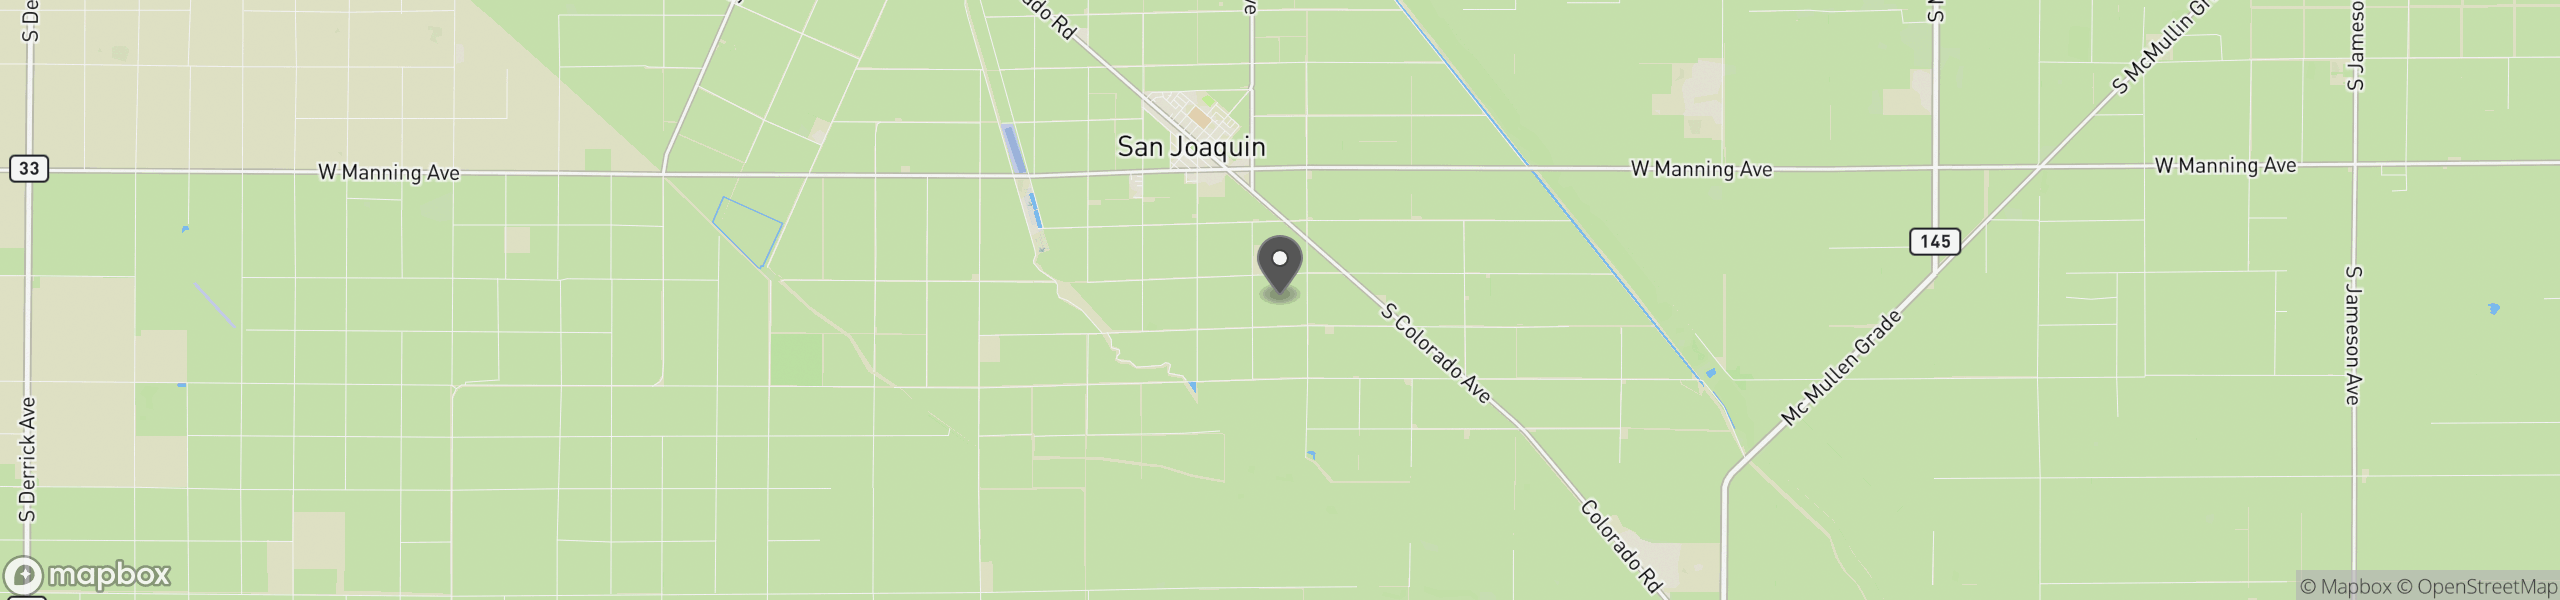 San Joaquin, CA 93660